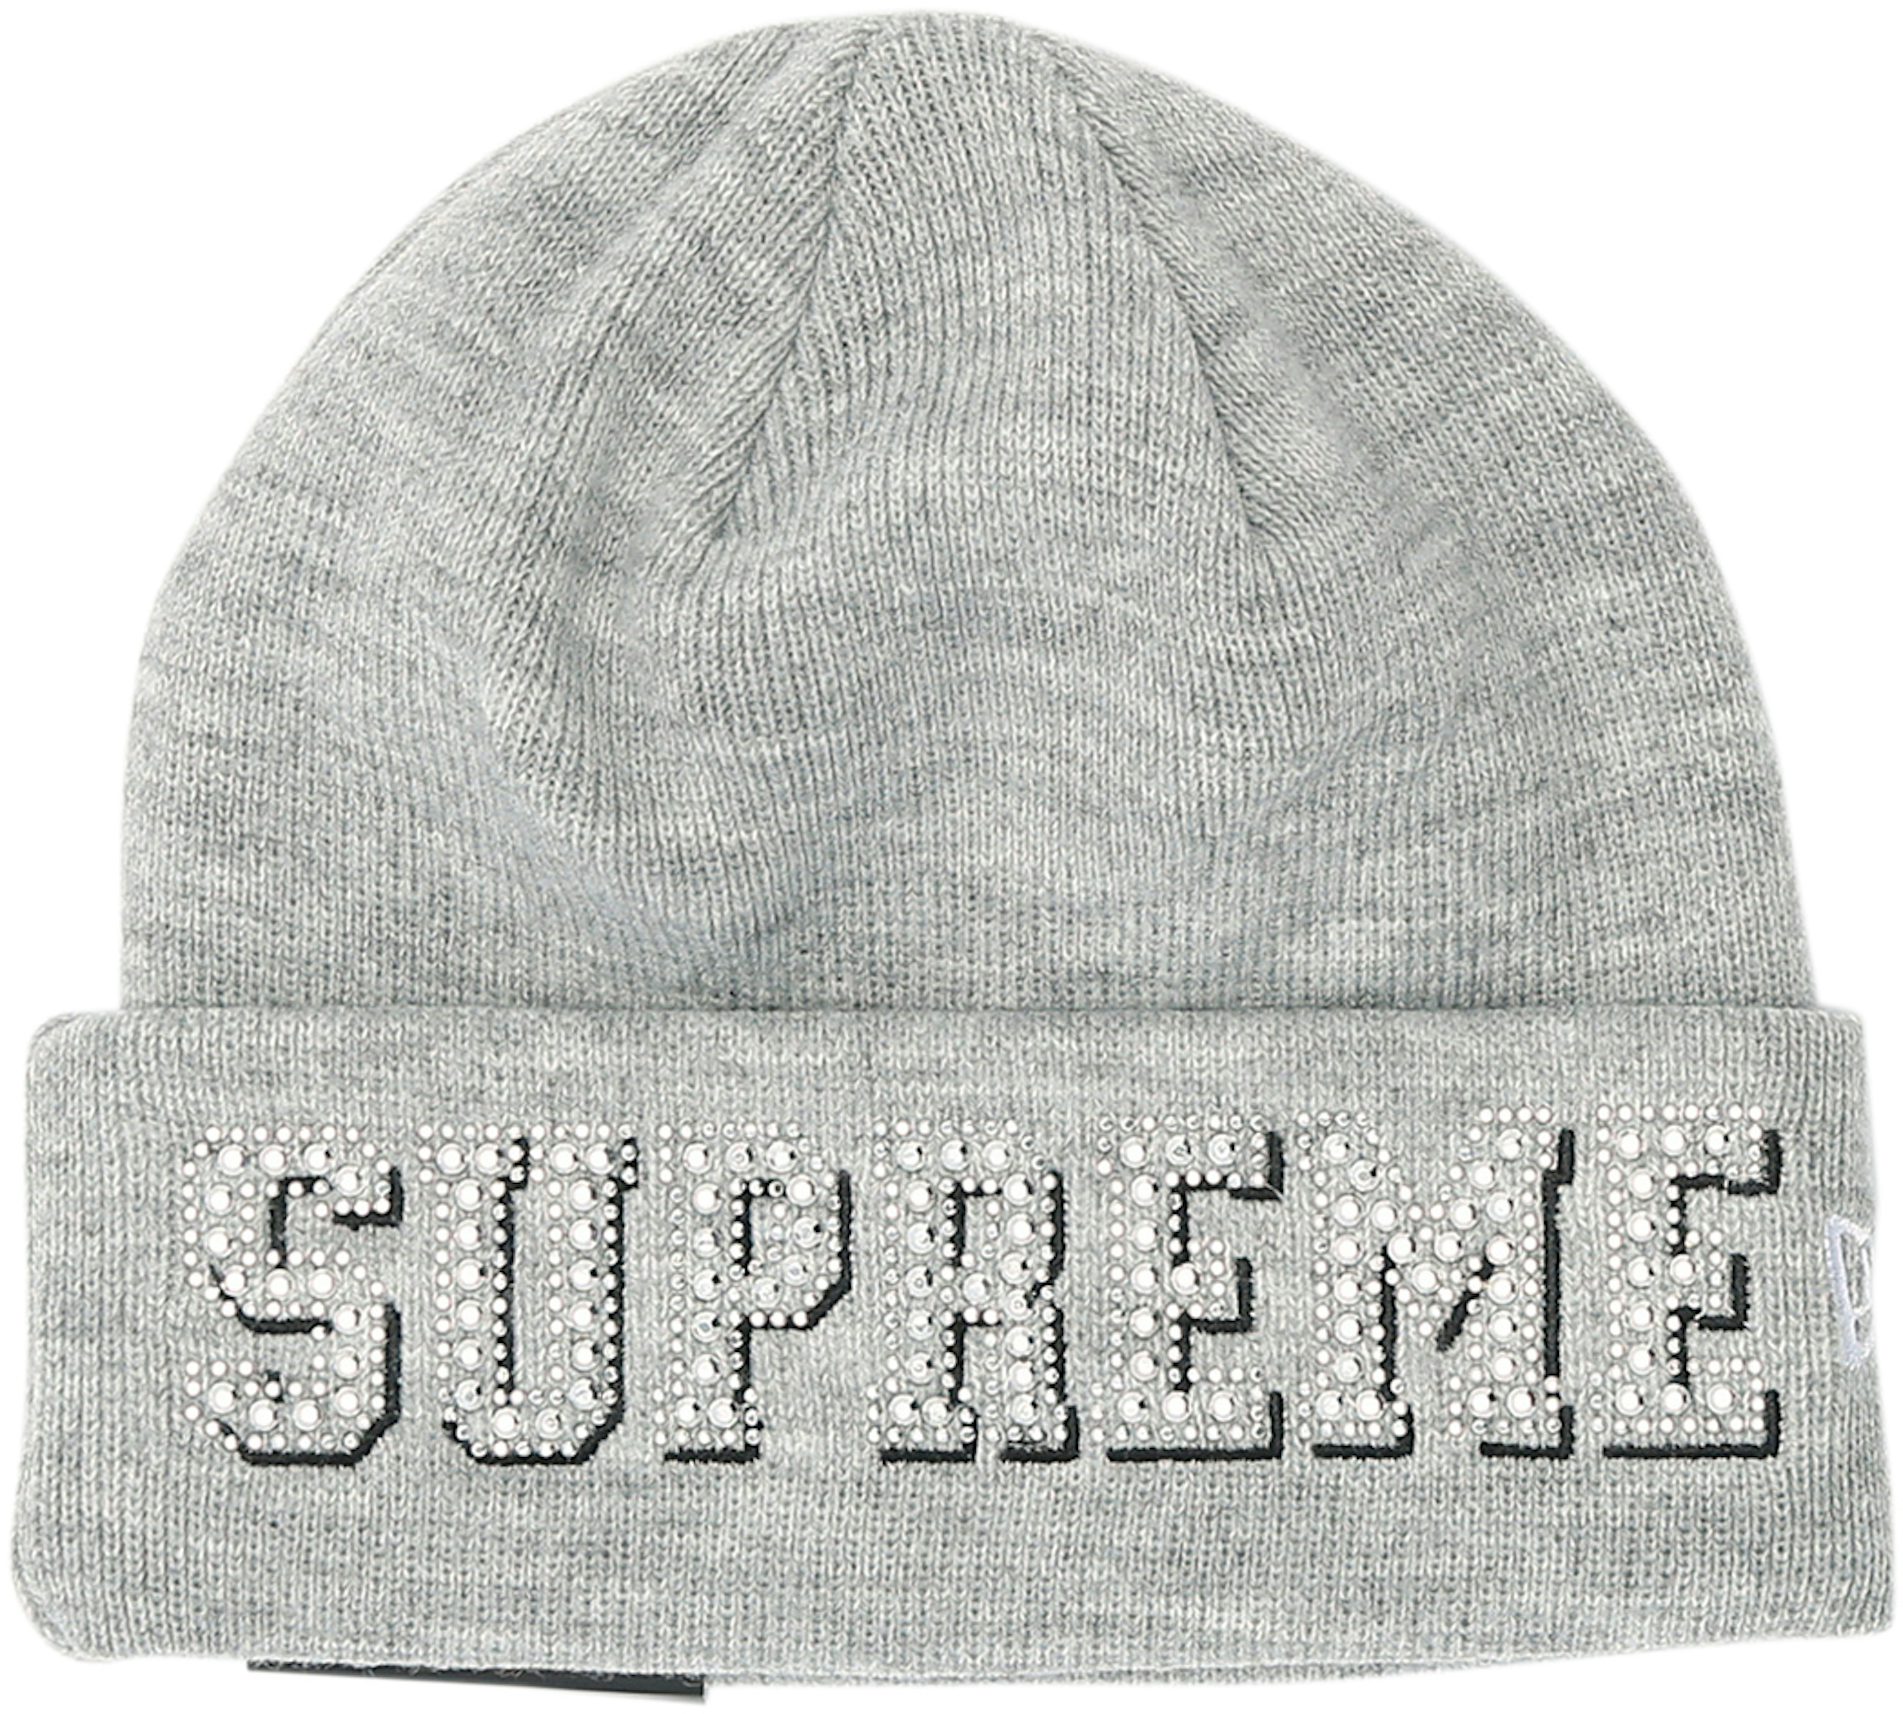 Supreme supreme logo - Gem